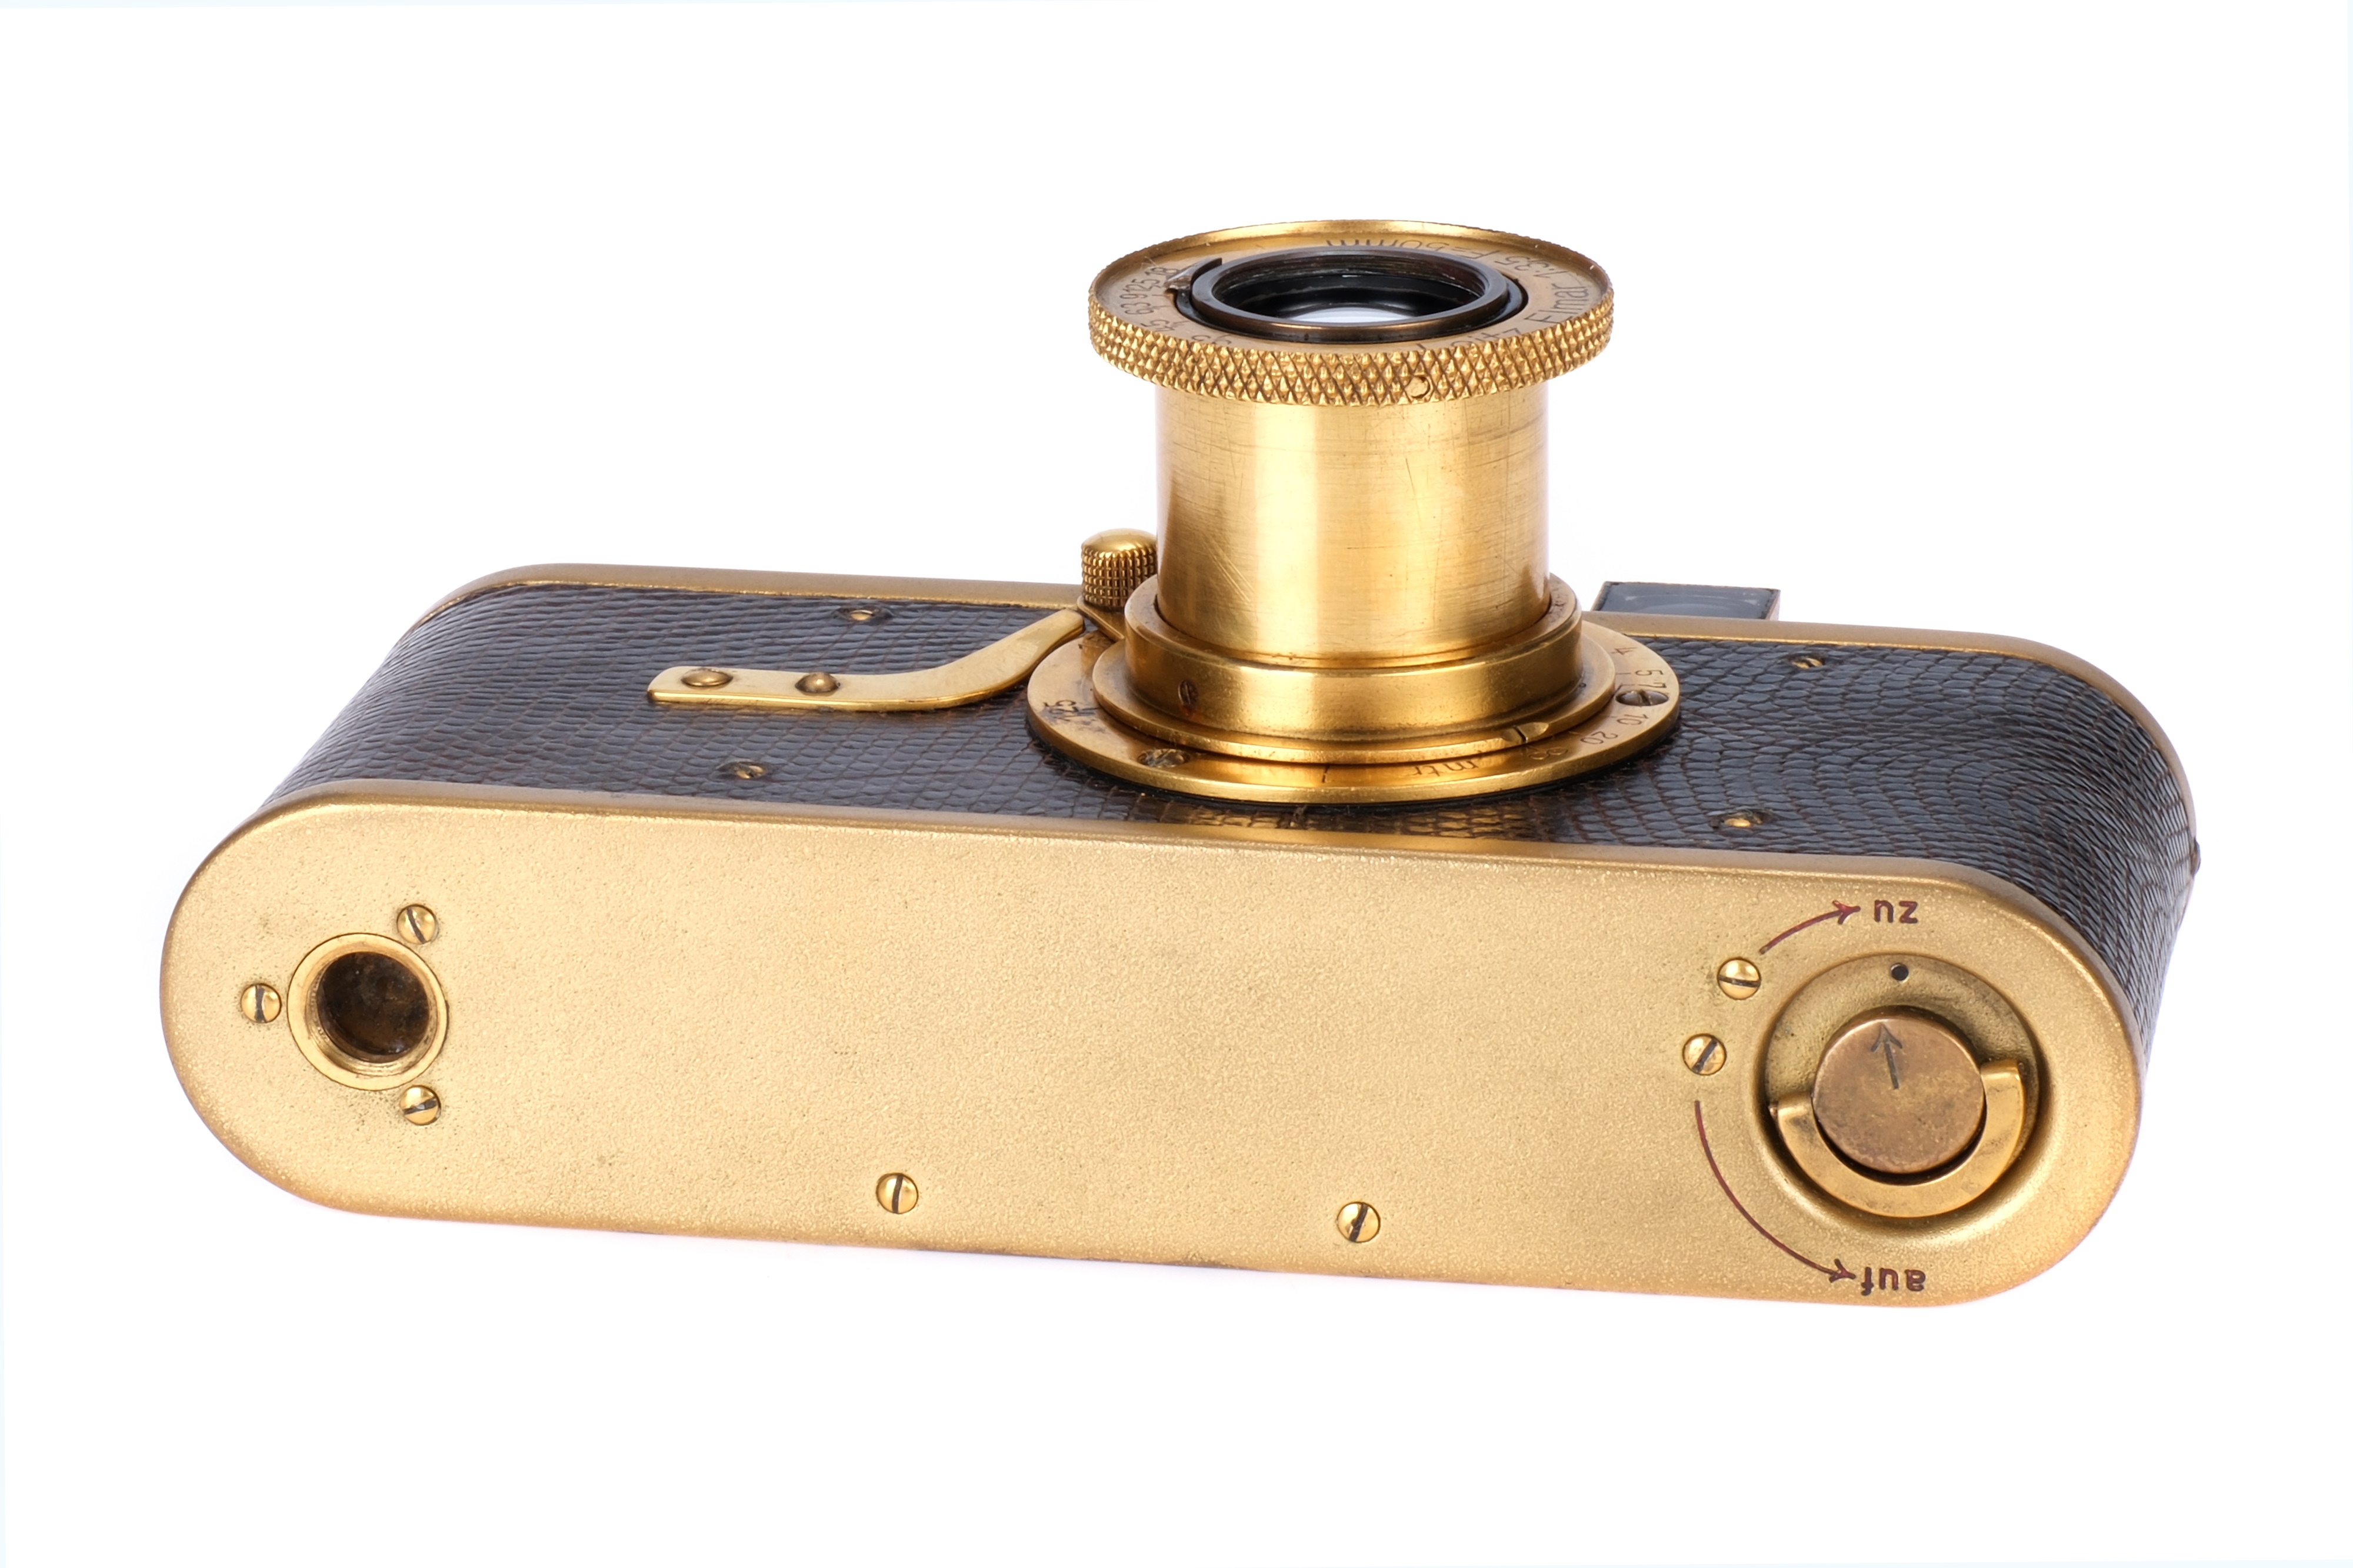 A Leica I Model A 'Luxus' Replica Camera, - Image 4 of 4